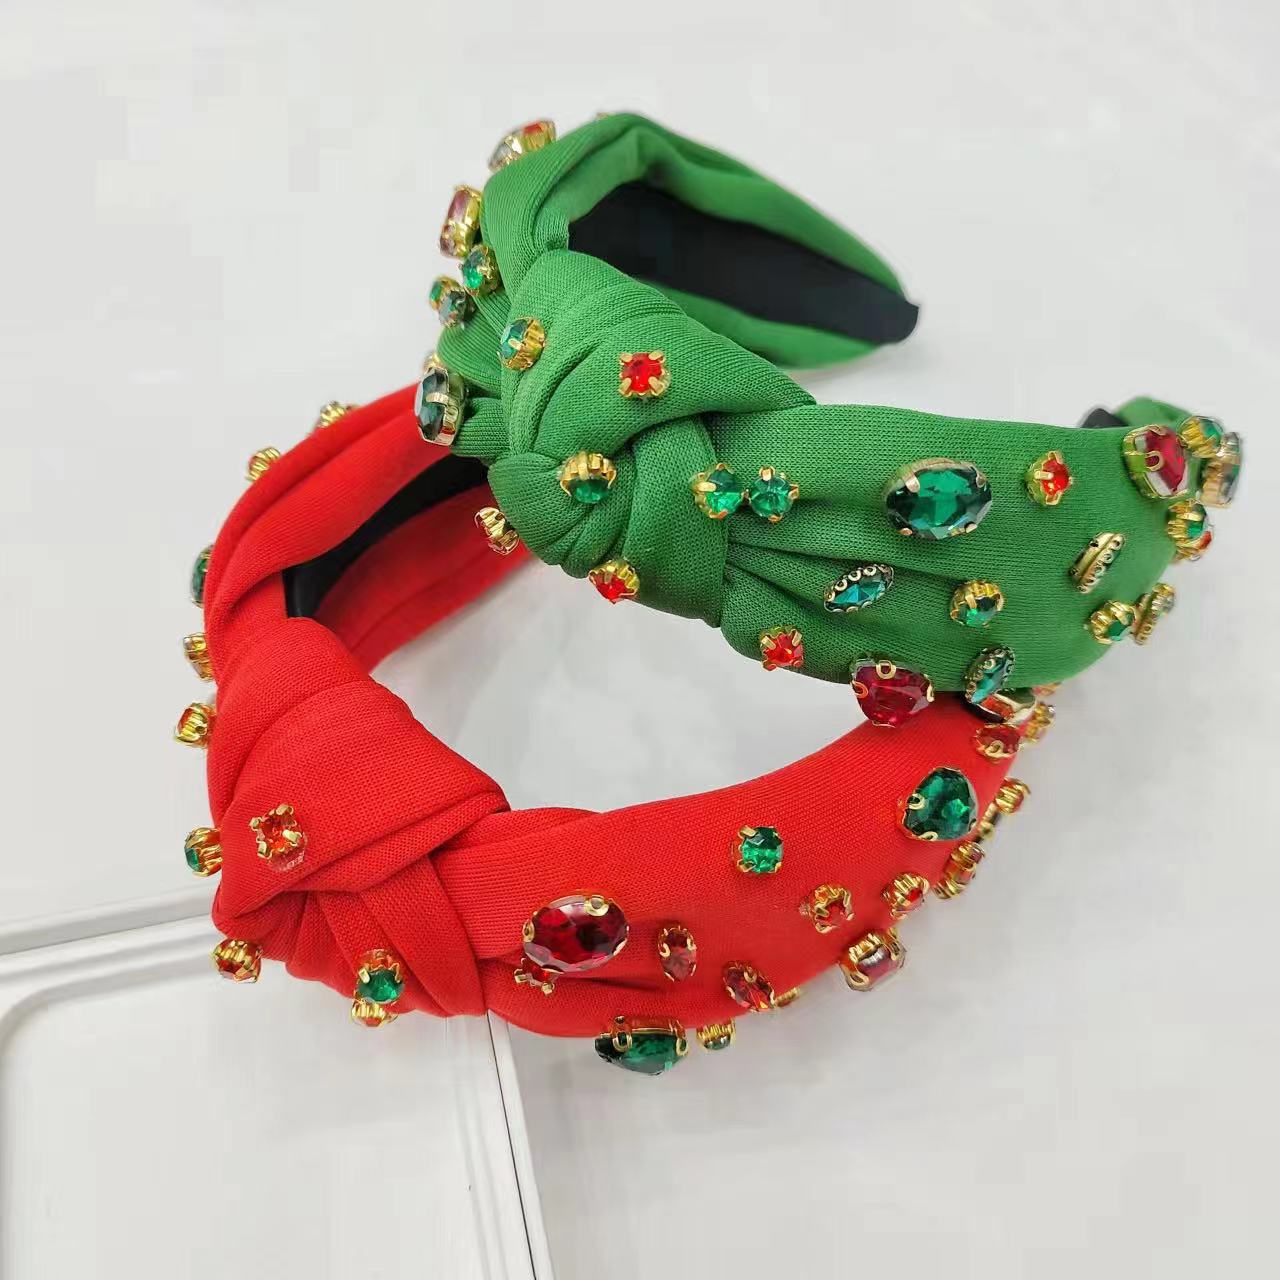 Diamond Knot Holiday Party Headband